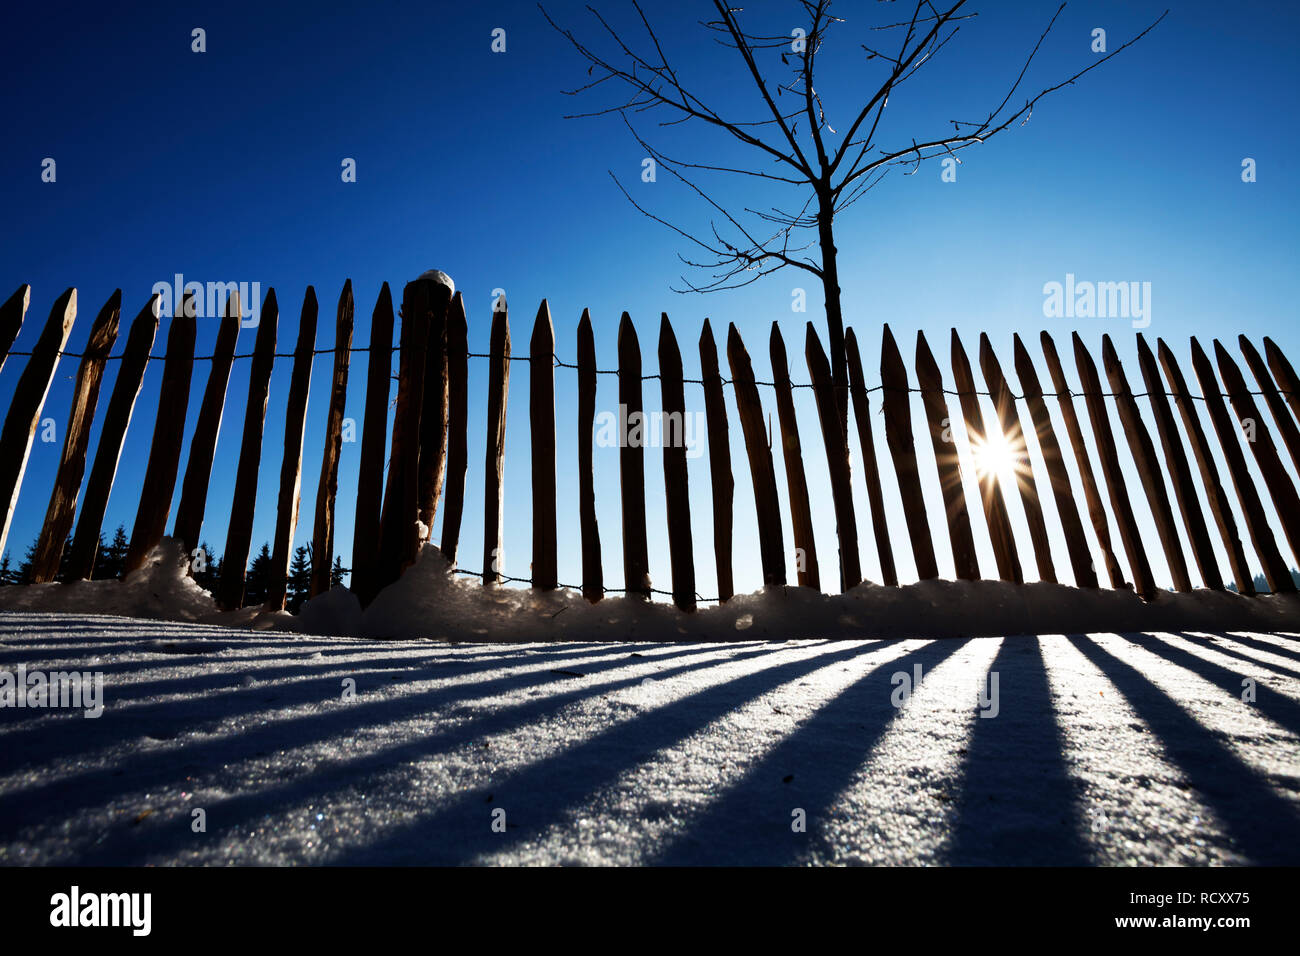 Valla en la retroiluminación en invierno Foto de stock